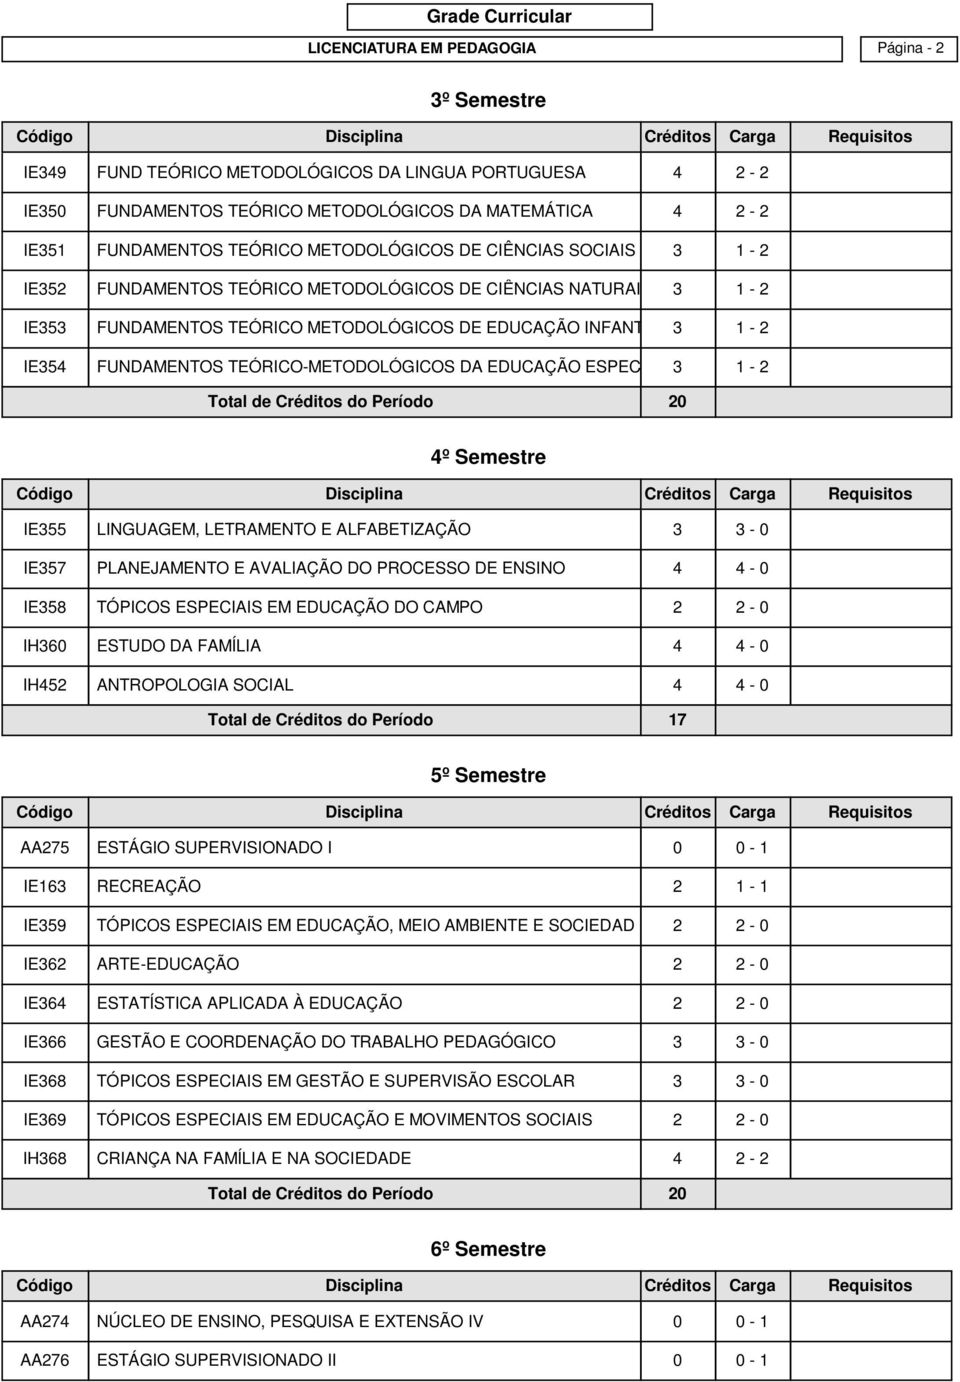 TEÓRICO-METODOLÓGICOS DA EDUCAÇÃO ESPECIAL 3 1-2 4º Semestre IE355 LINGUAGEM, LETRAMENTO E ALFABETIZAÇÃO 3 3-0 IE357 PLANEJAMENTO E AVALIAÇÃO DO PROCESSO DE ENSINO 4 4-0 IE358 TÓPICOS ESPECIAIS EM